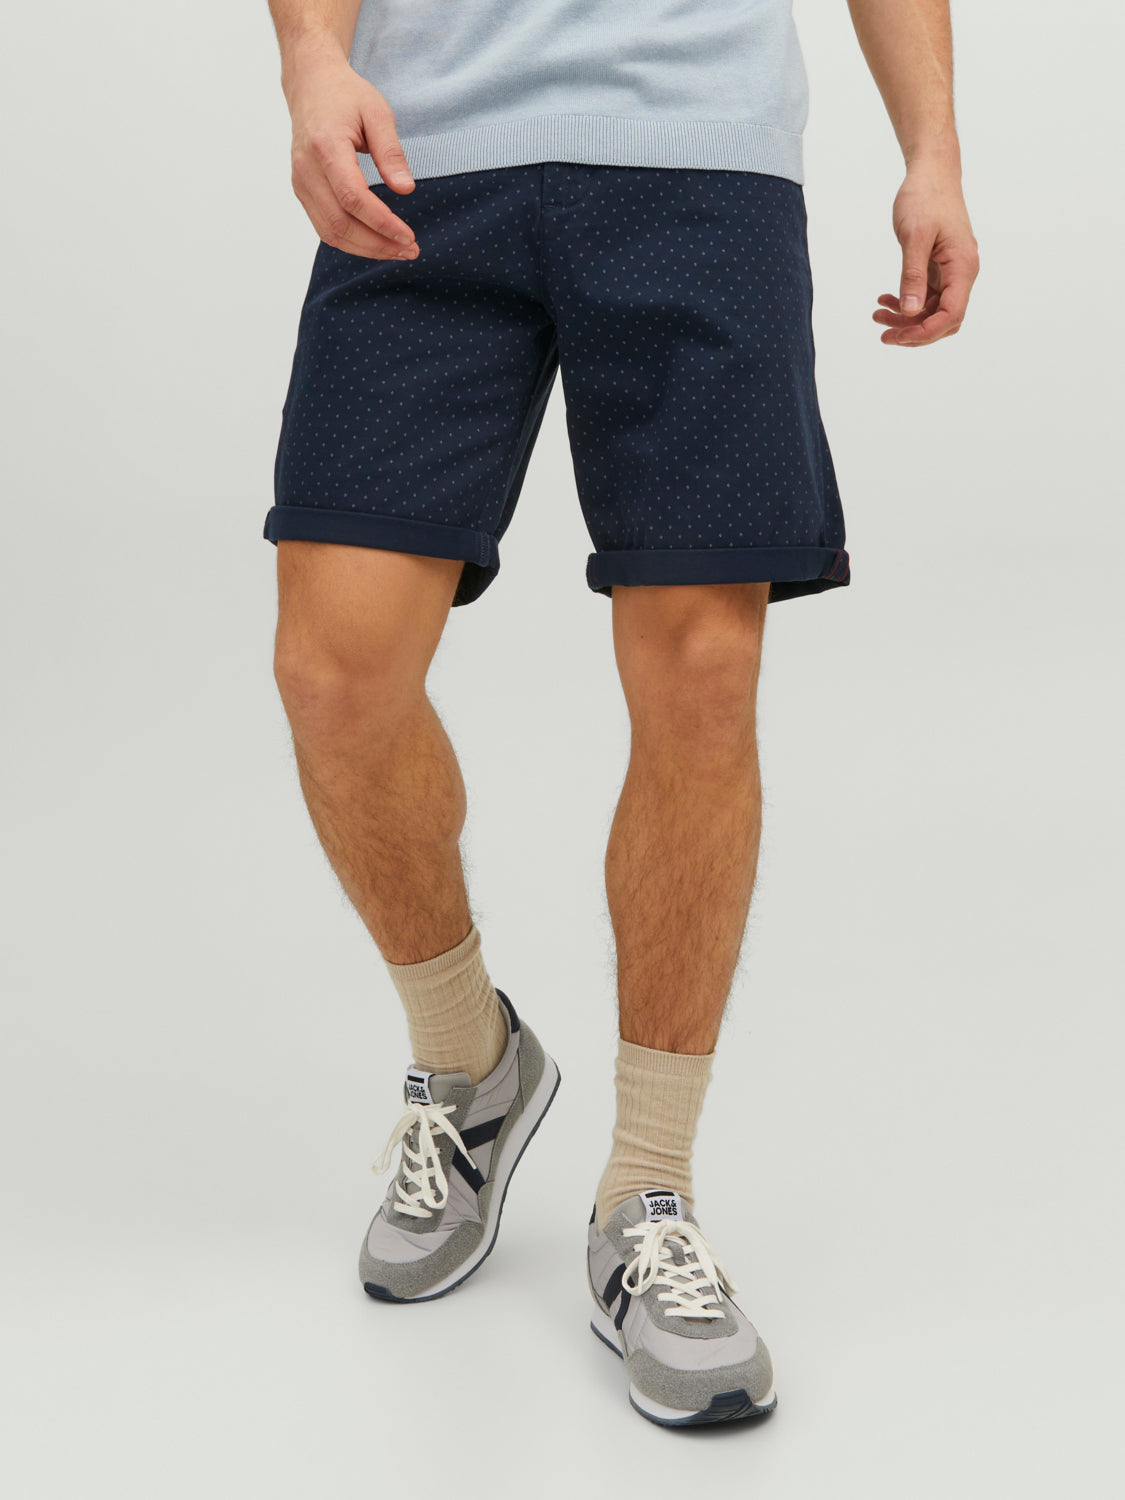 Pantalones cortos chinos JPSTBOWIE - Azul marino